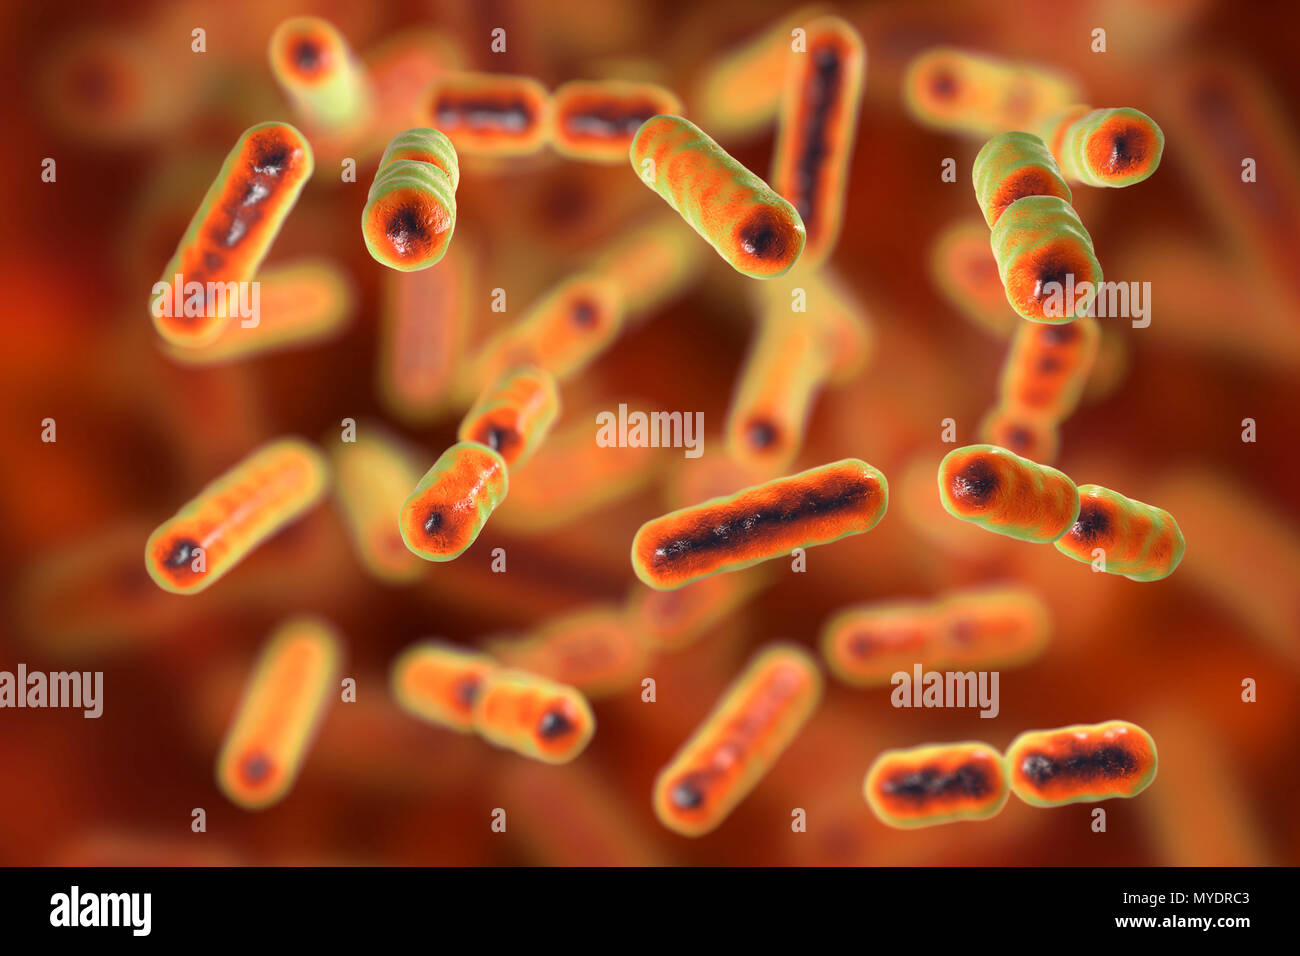 Computer illustrazione di Bacteroides sp. batteri. Questi sono a forma di asta, obbligherà anaerobico gram-negativi, saccharolytic batteri. Il Bacteroides sono i più comuni batteri trovati nell'umana intestinale. Essi sono coinvolti in molte importanti attività metaboliche nella flora umano del colon, compresa la fermentazione di carboidrati, l'utilizzazione di sostanze azotate, e la biotrasformazione di acidi biliari e altri steroidi. Quando il Bacteroides sfuggire il colon, essi sono responsabili di molti tipi di infezioni e ascessi che possono verificarsi in tutto il corpo compresa la parte superiore del corpo, Foto Stock